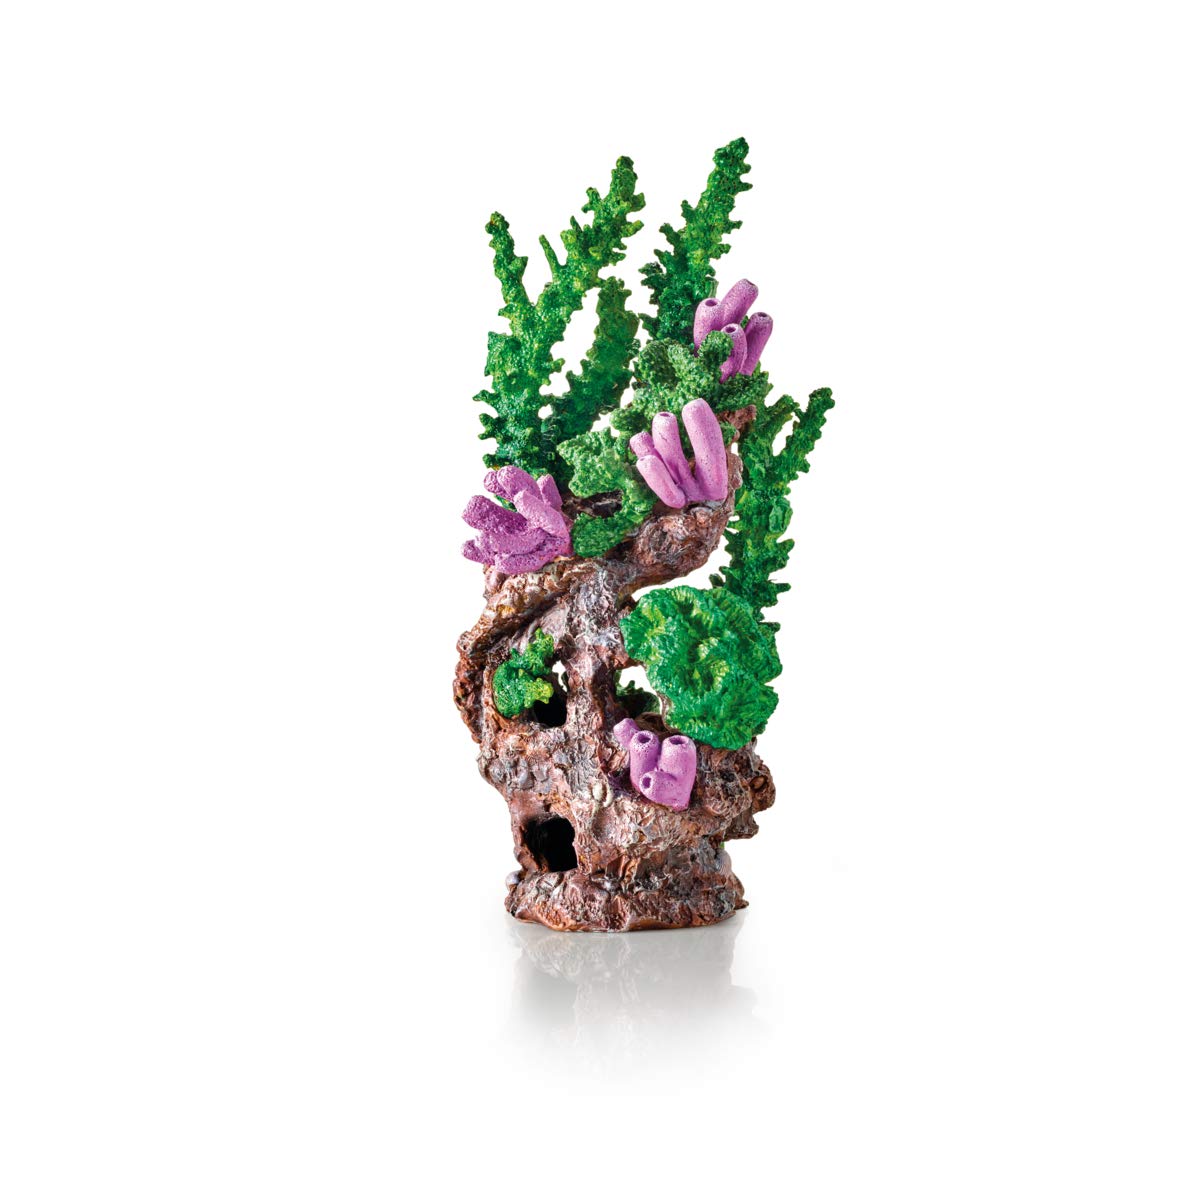 biOrb 71936 Korallenriff Ornament grün - Aquariendekoration in Form einer Koralle zur Gestaltung von bezaubernden Unterwasserwelten in biOrb-Aquarien für Süßwasser und Meerwasser geeignet